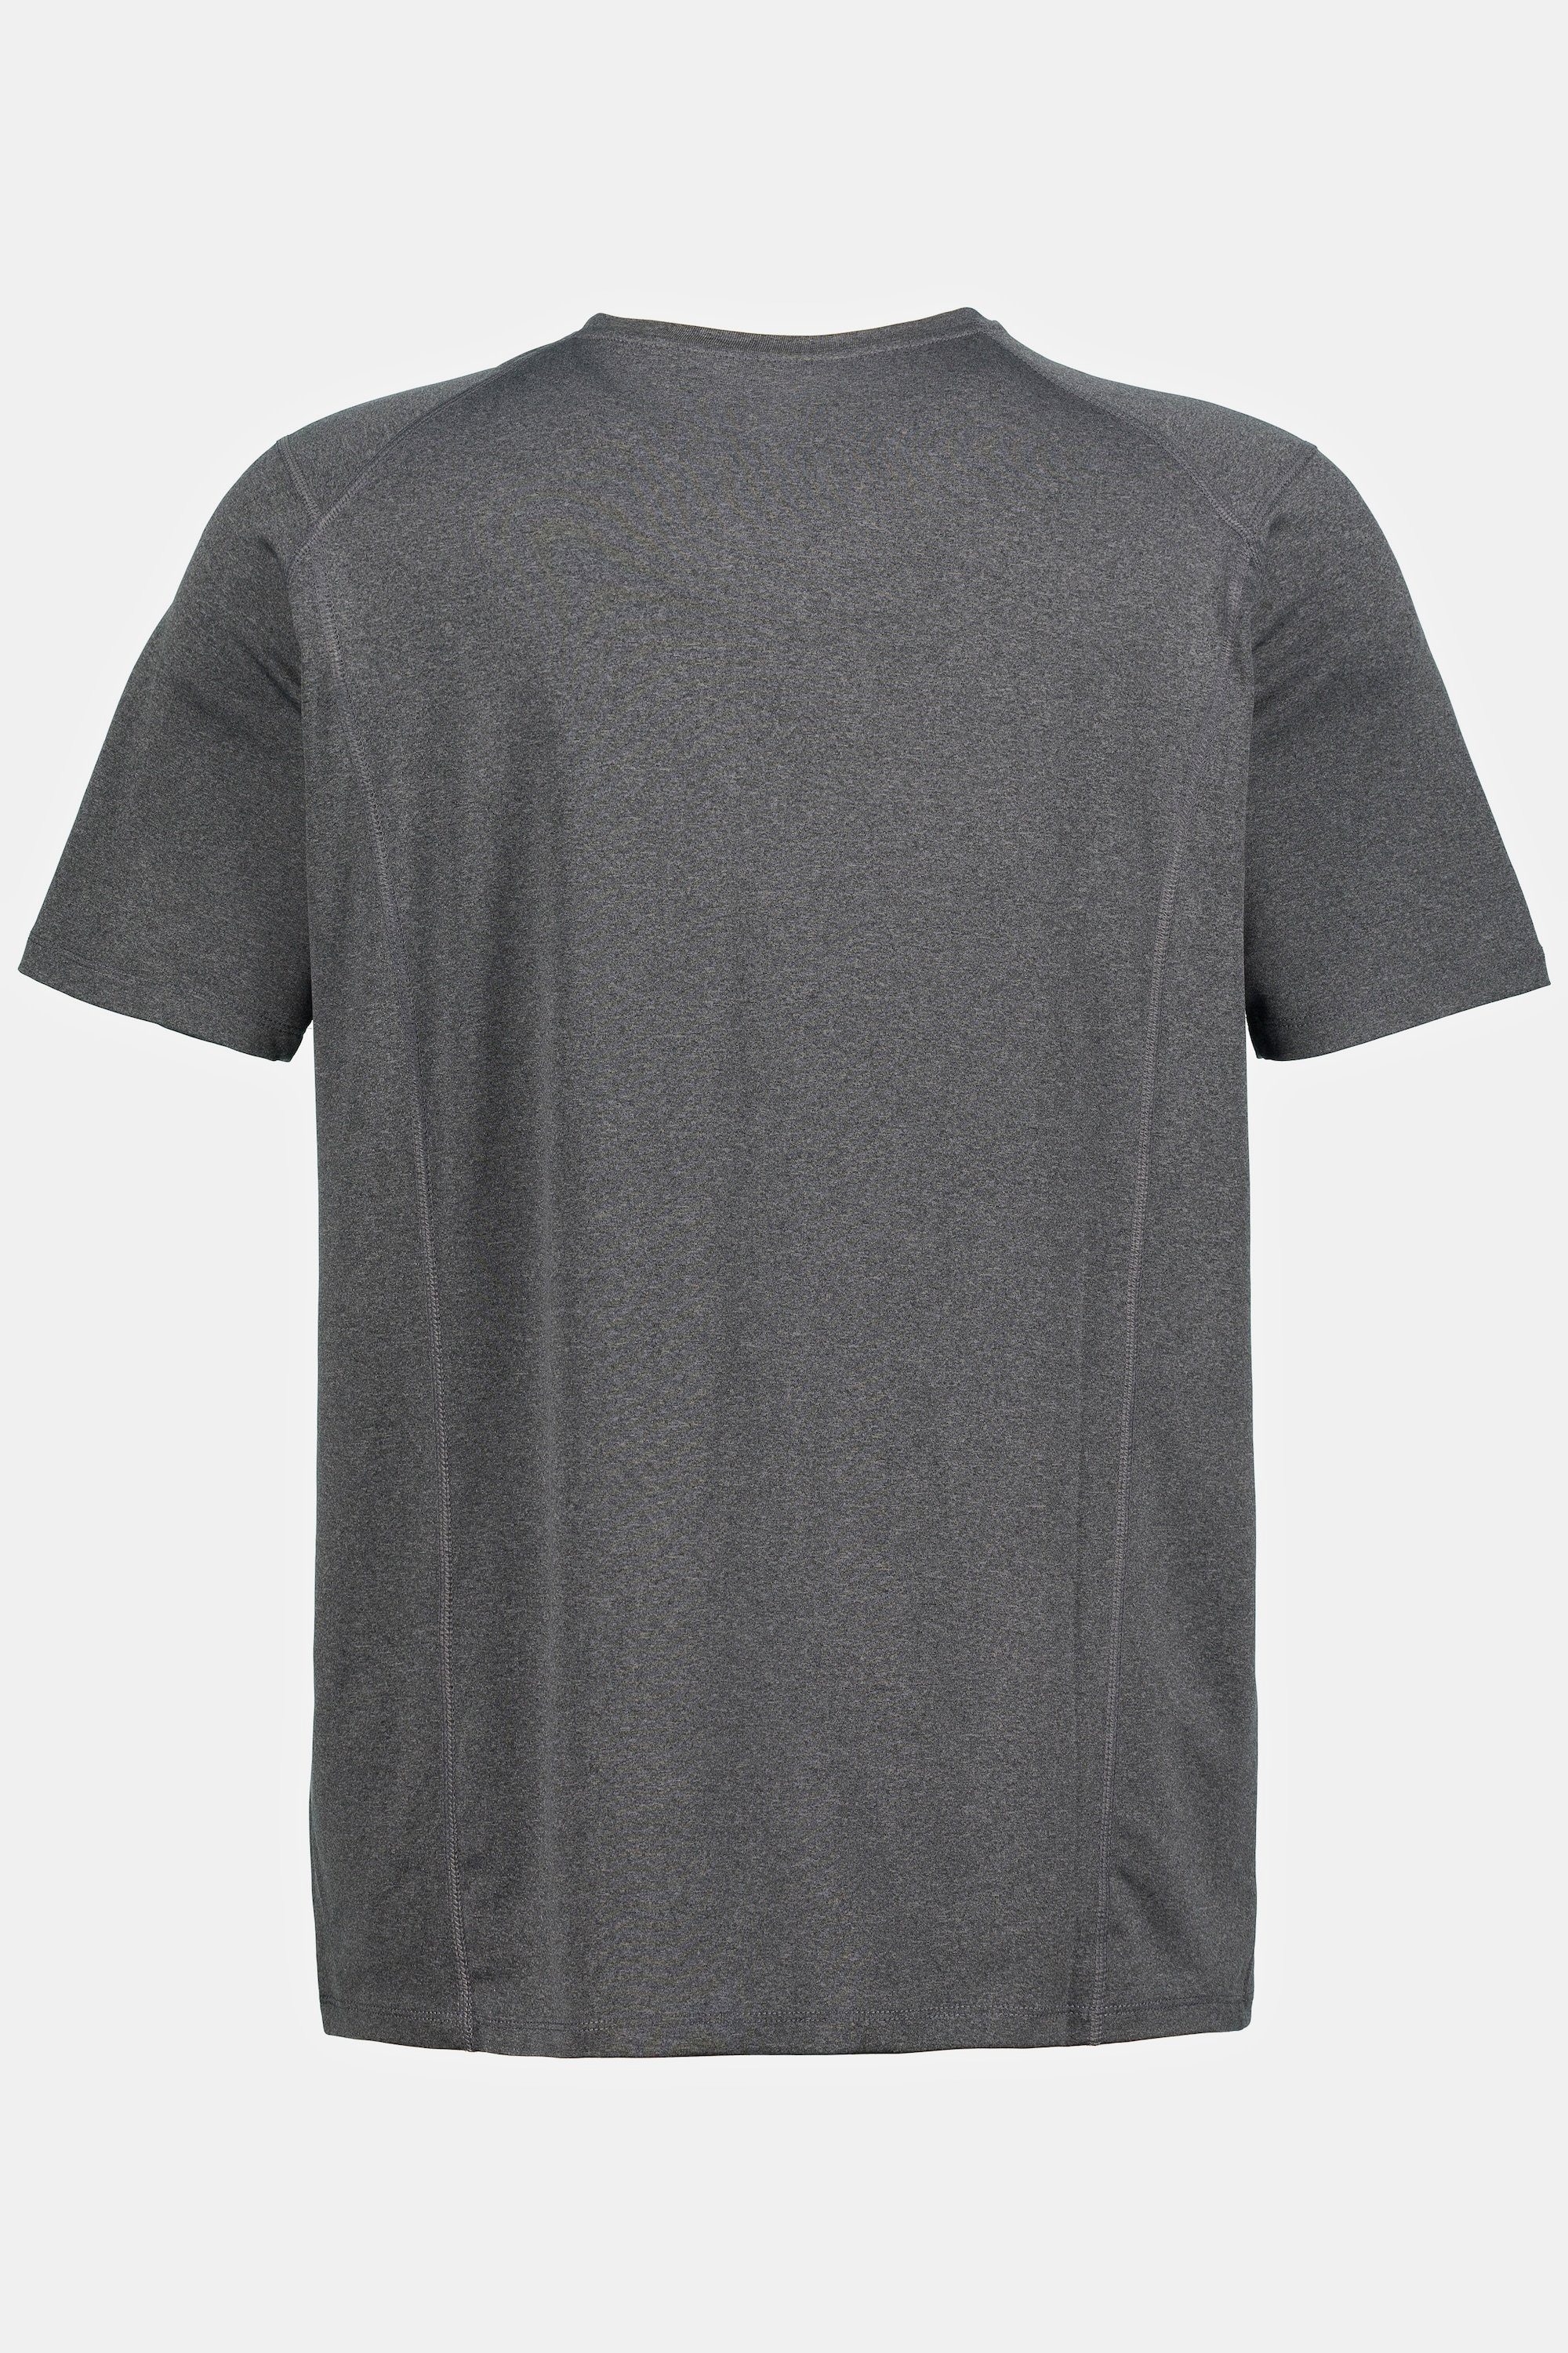 anthrazit Funktions-Shirt FLEXNAMIC® melange JP1880 Halbarm T-Shirt Fitness